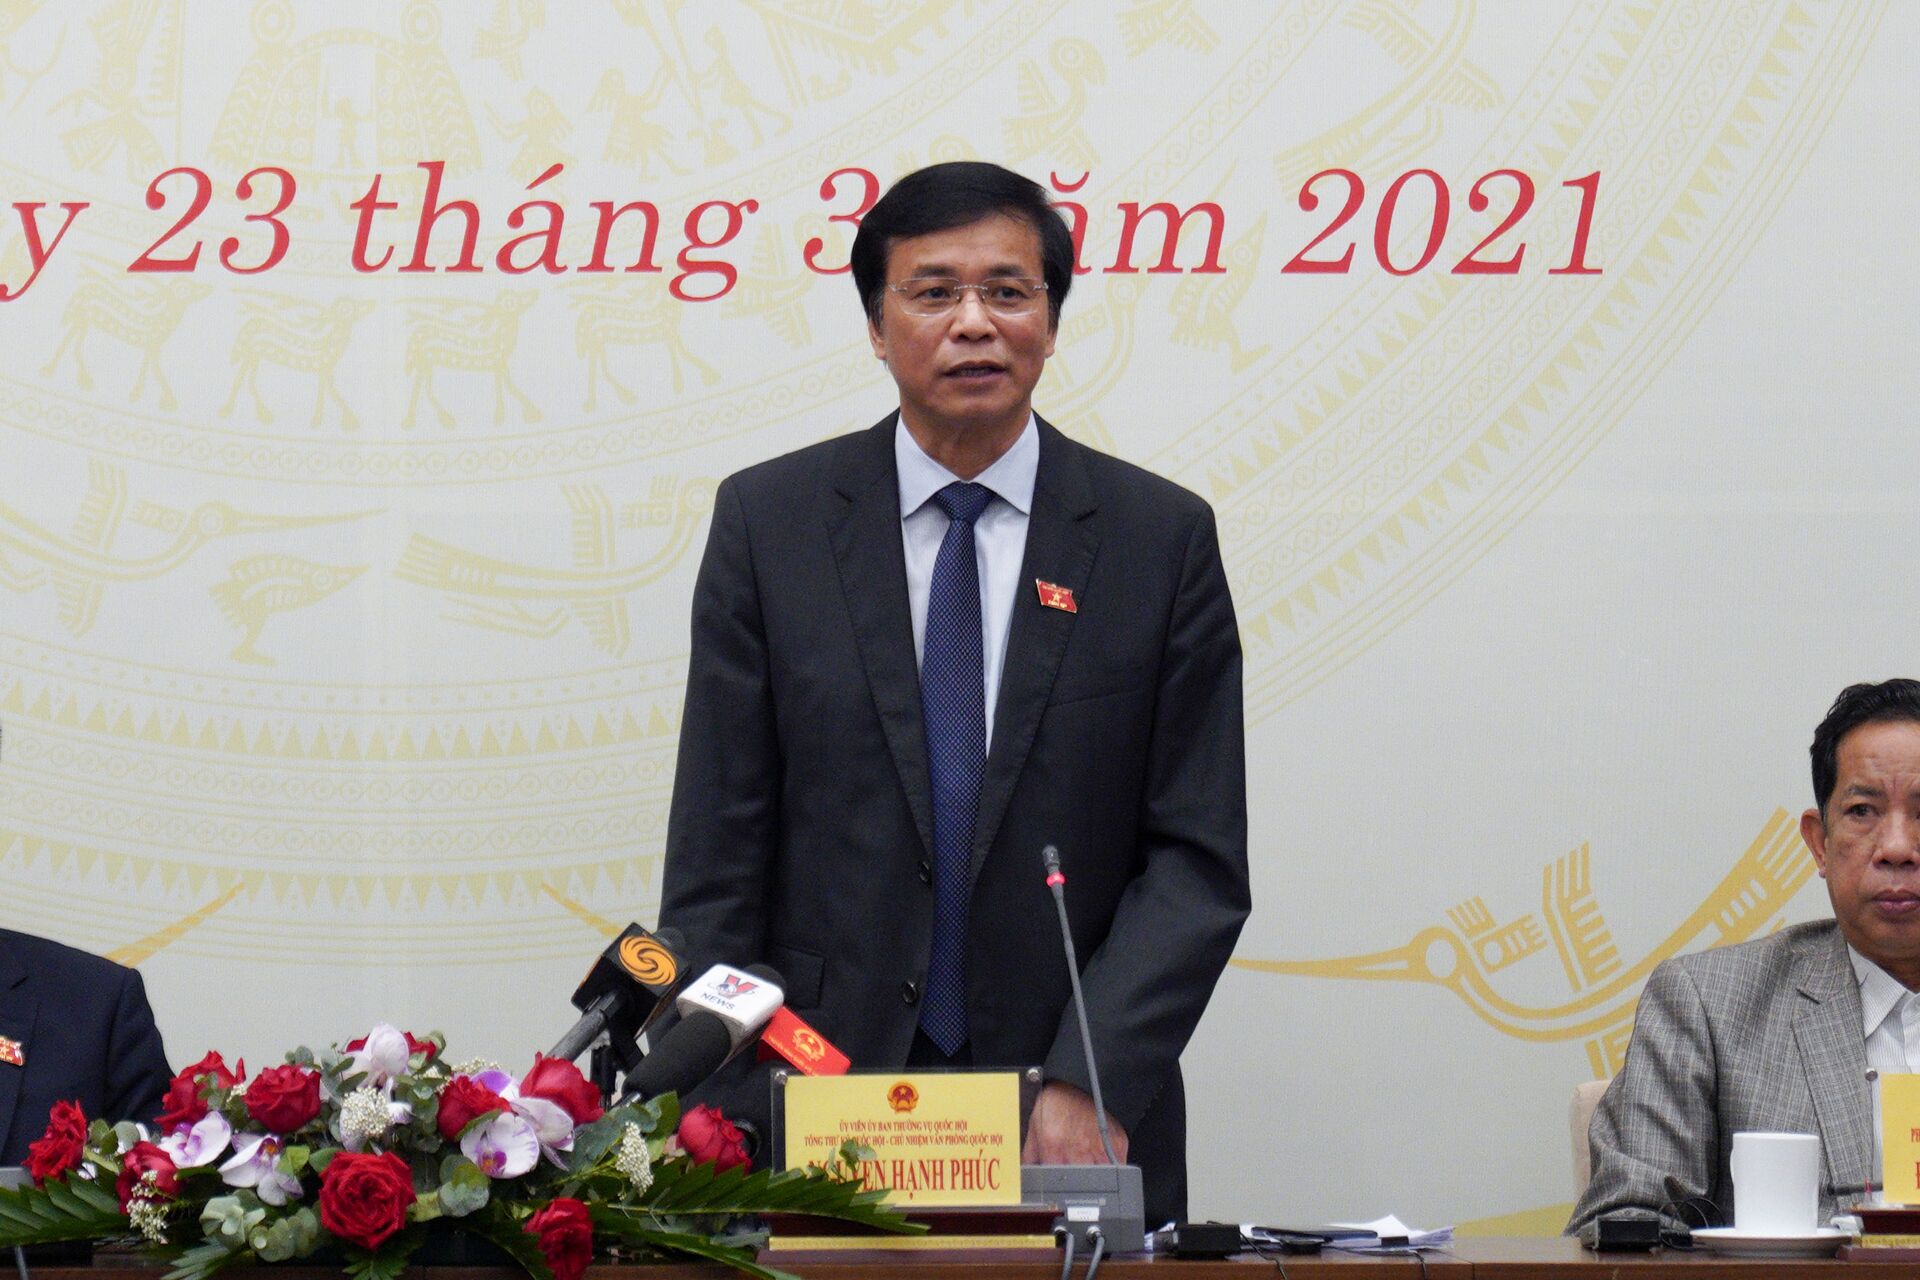 Quốc hội sẽ bầu chức danh Chủ tịch nước, Thủ tướng, Chủ tịch Quốc hội - Sputnik Việt Nam, 1920, 23.03.2021